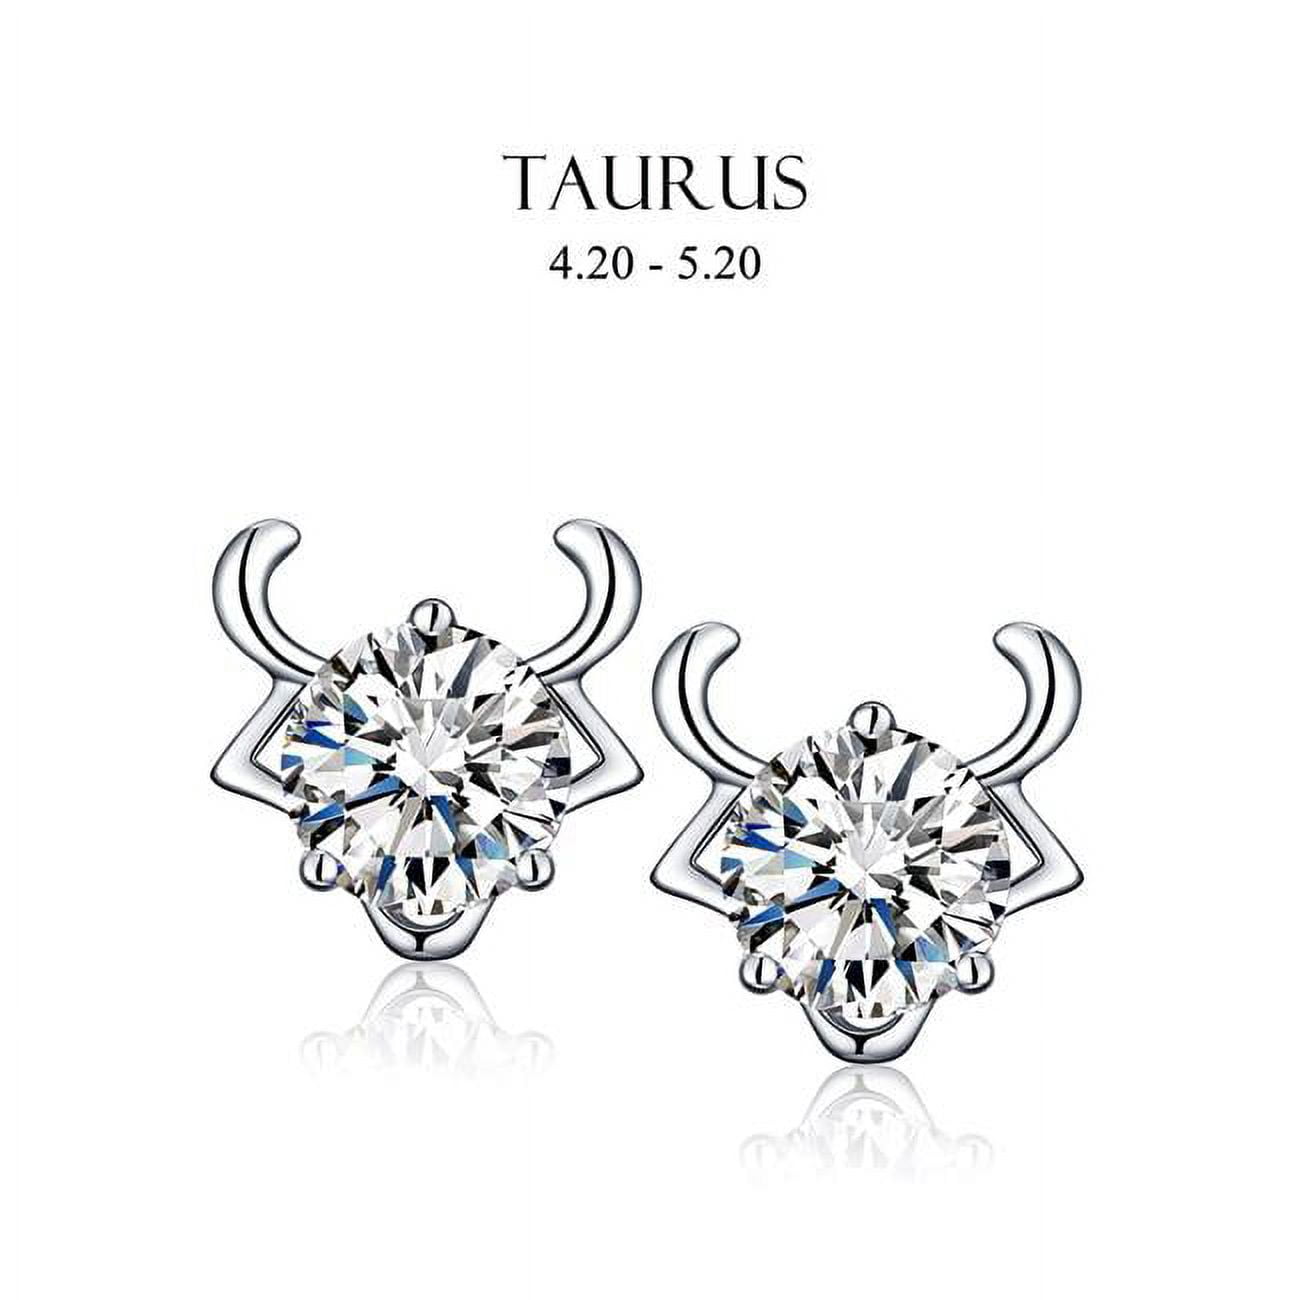 Picture of Amabel Designs E-I2CZTAU-RDM Rhodium Cubic Zirconia Taurus Stud Earrings